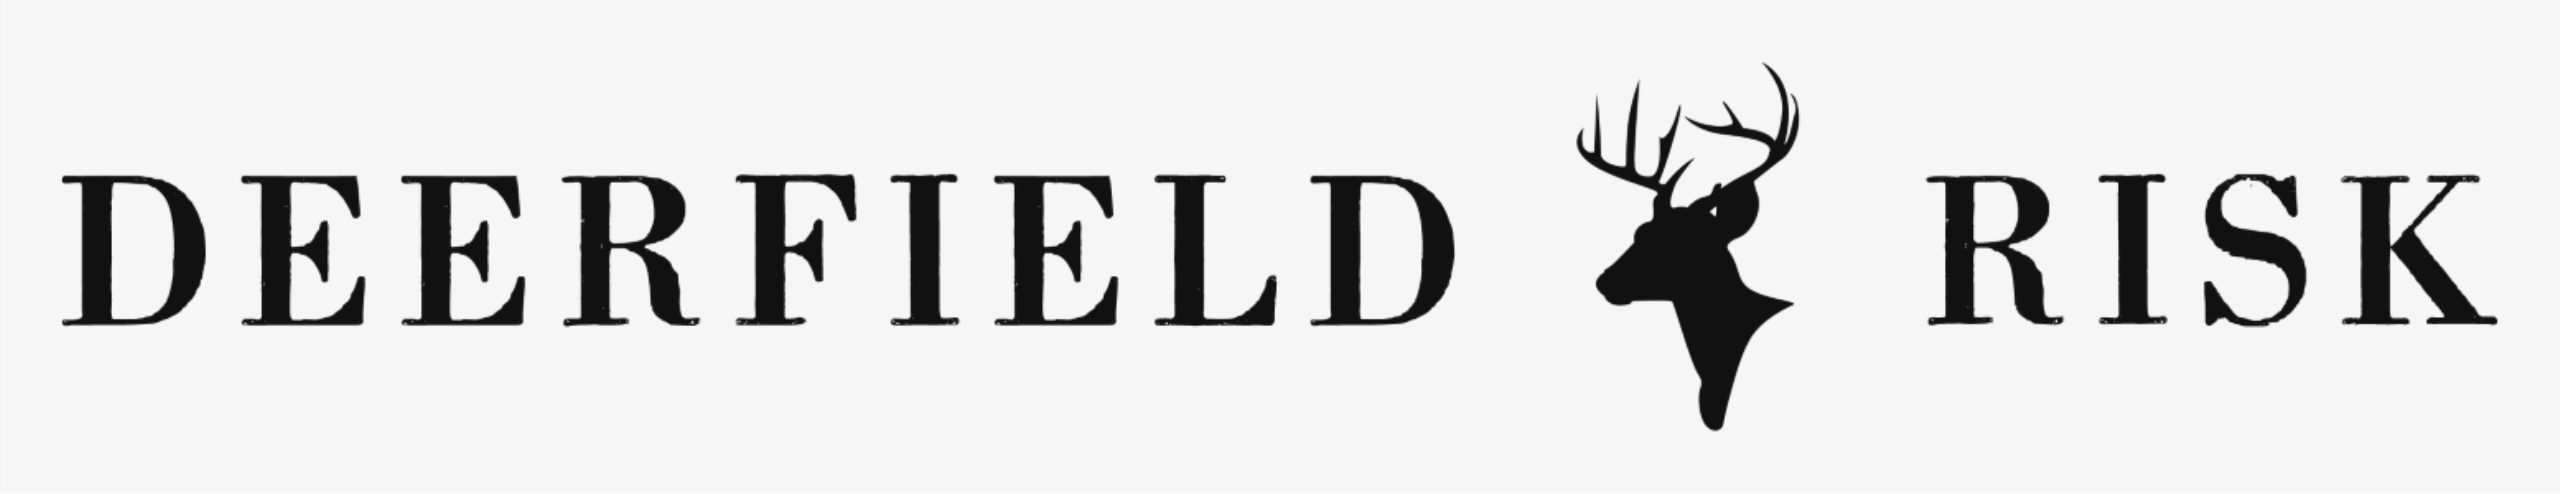 Deerfield Risk Advisors LLC Logo